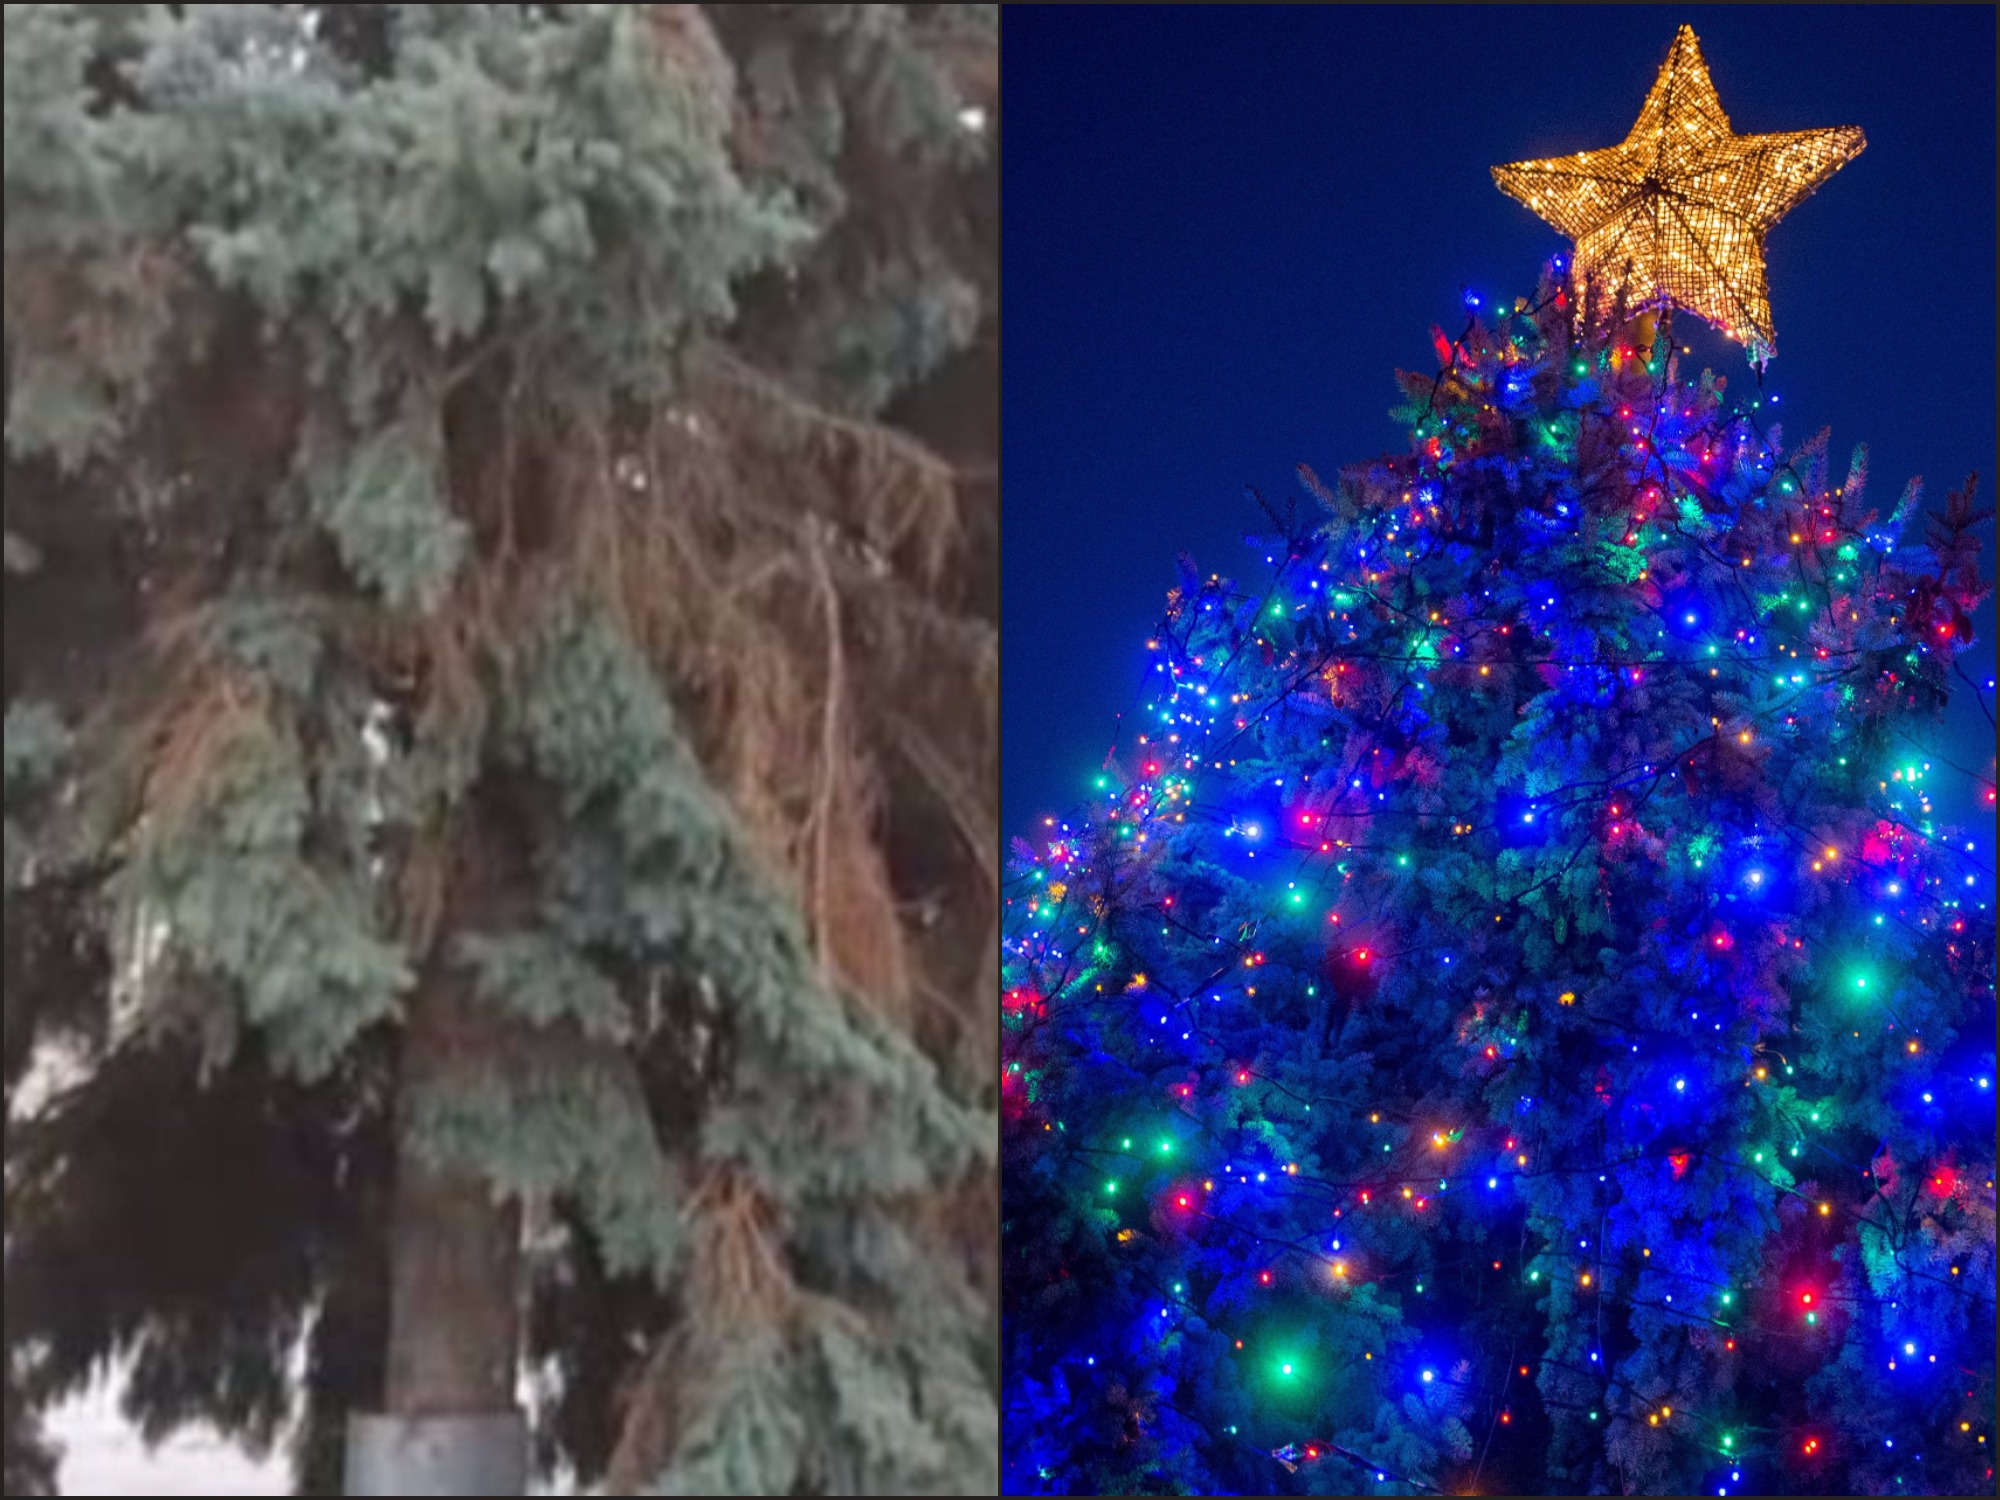 Hát vannak még csodák: kivilágítva támadt fel az ország ronda karácsonyfája